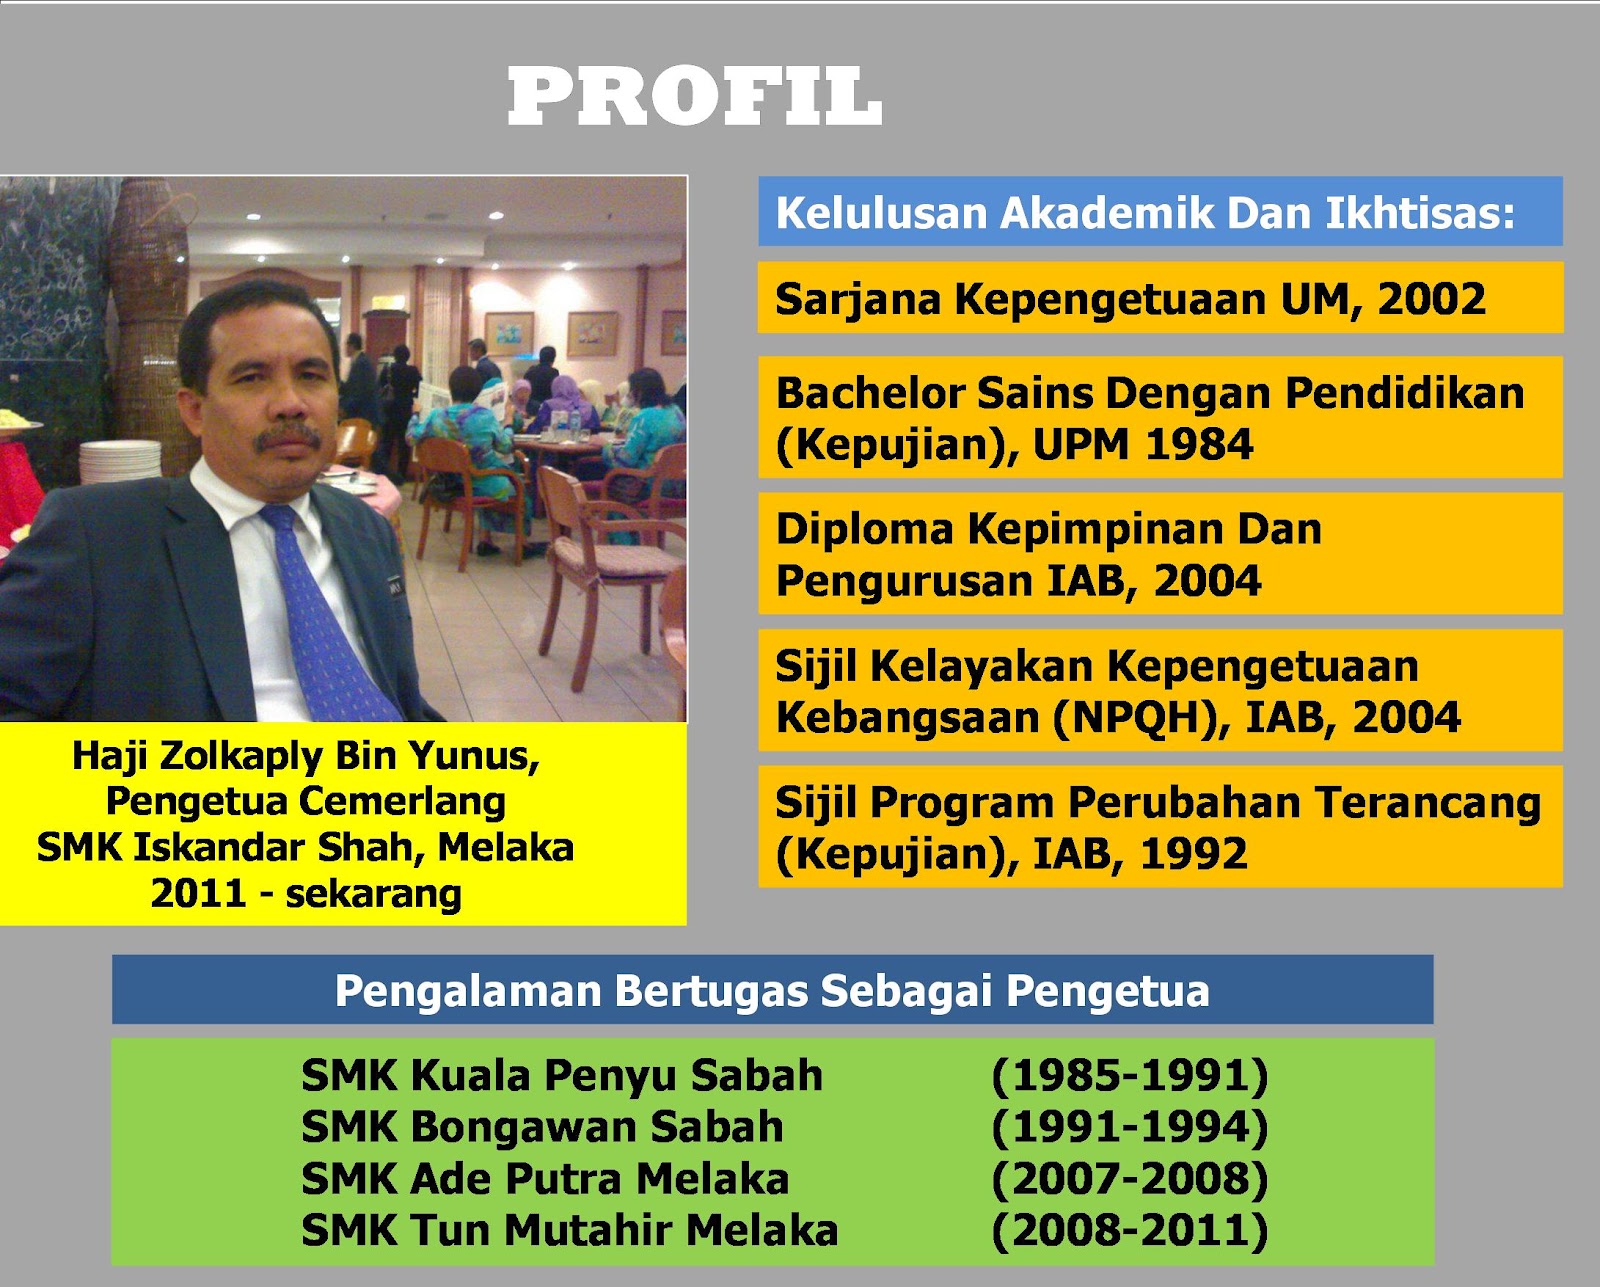 Zolkaplyyunus: Profil Pengetua SMK Iskandar Shah